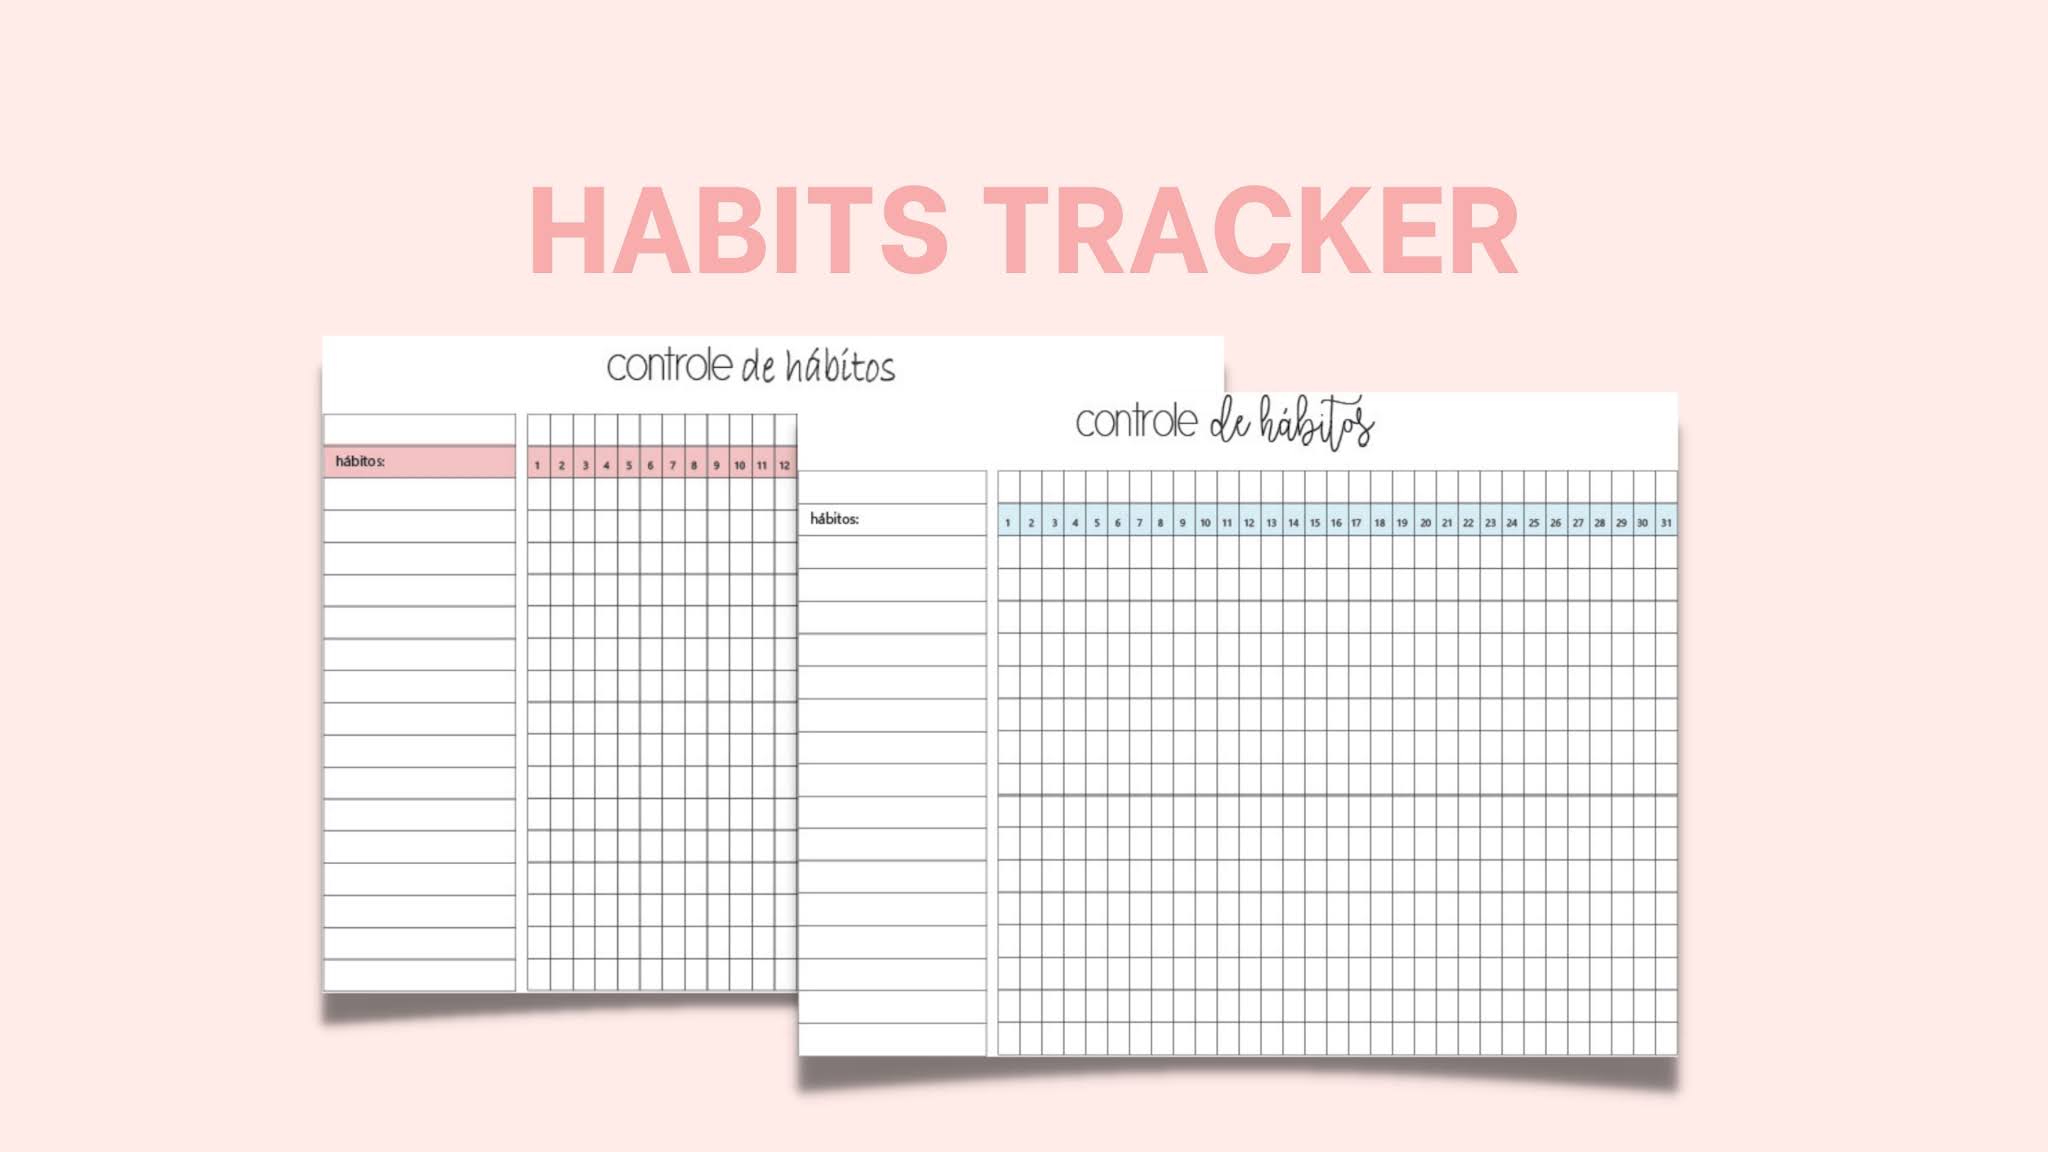 Habit Tracker (Controle de hábitos) como usar e se organizar utilizando esse método